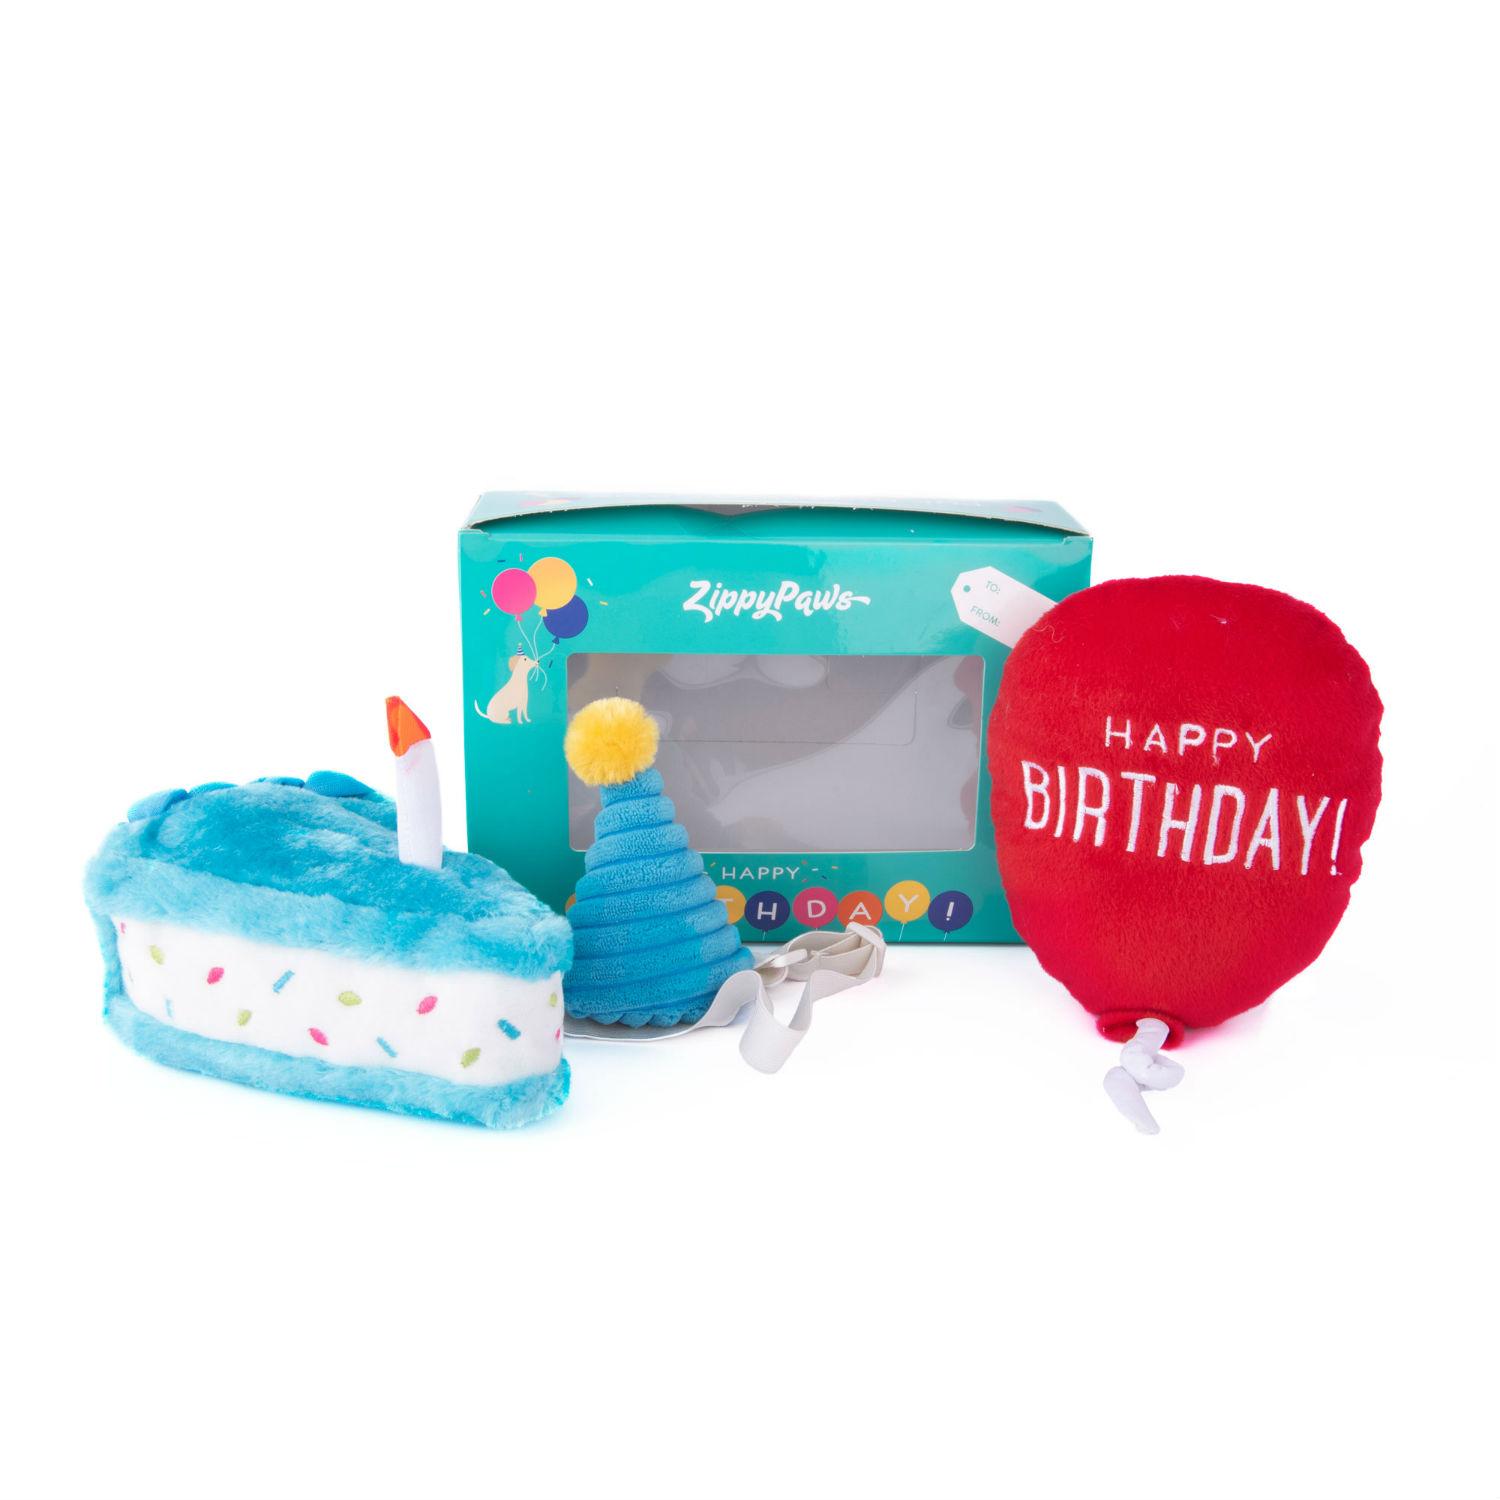 ZippyPaws Dog Toy Birthday Box - Blue